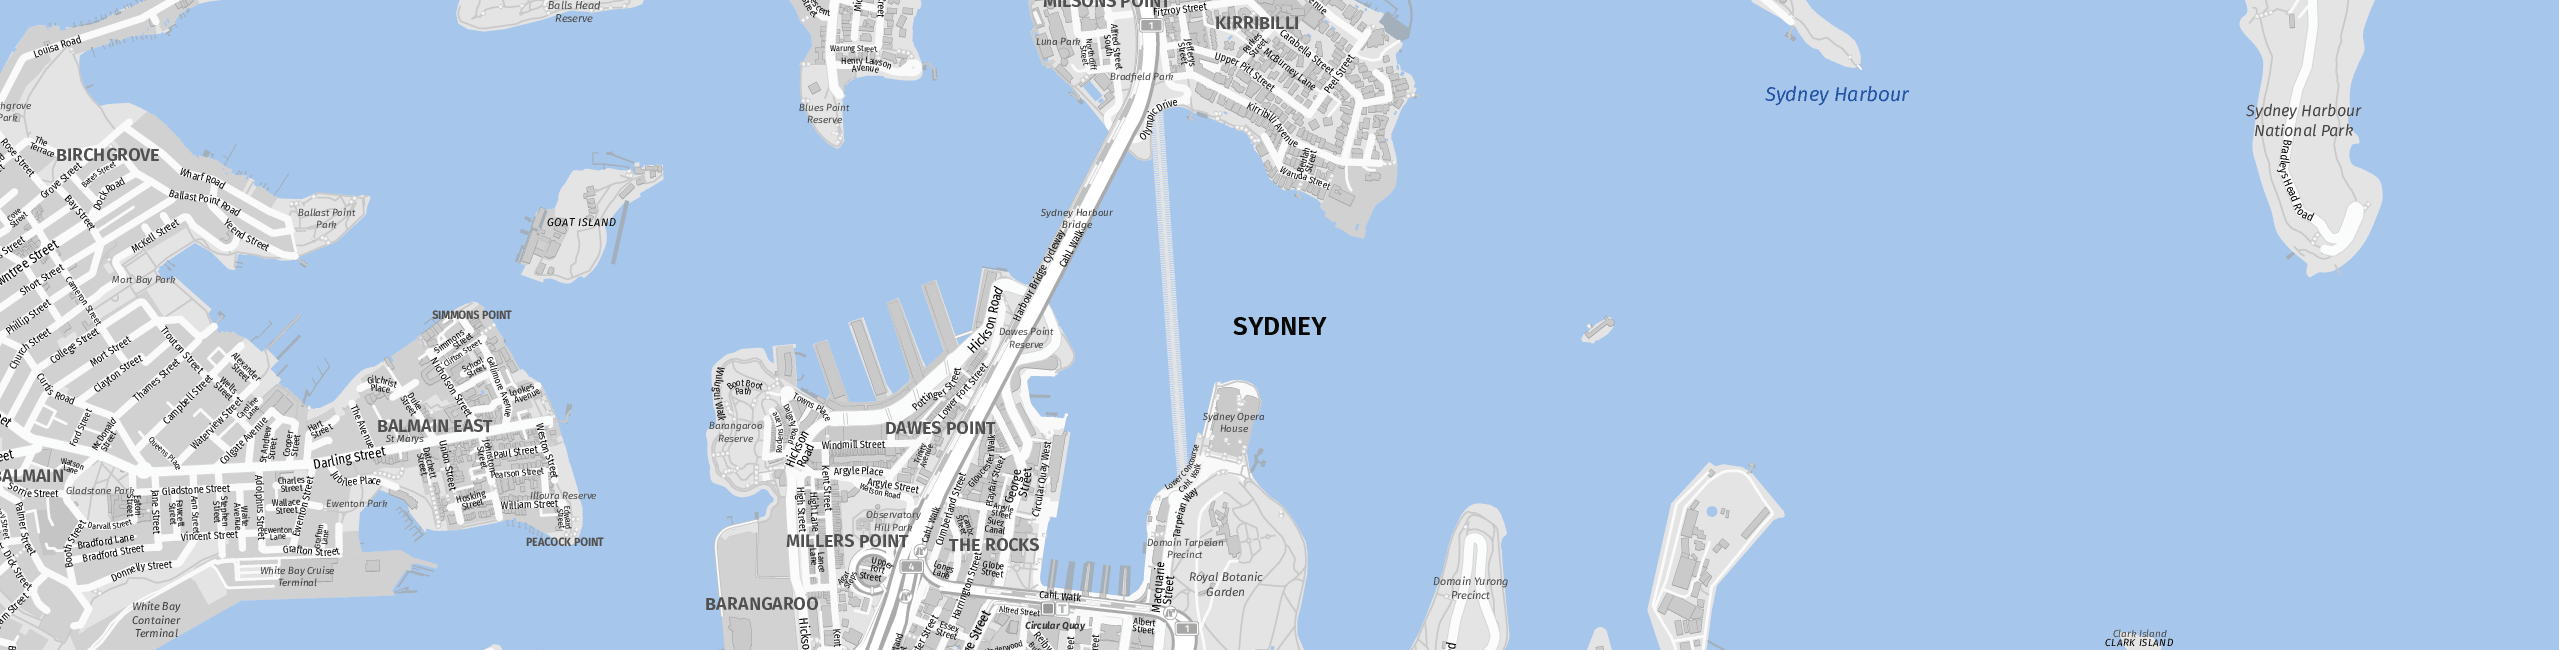 Stadtplan Sydney zum Downloaden.